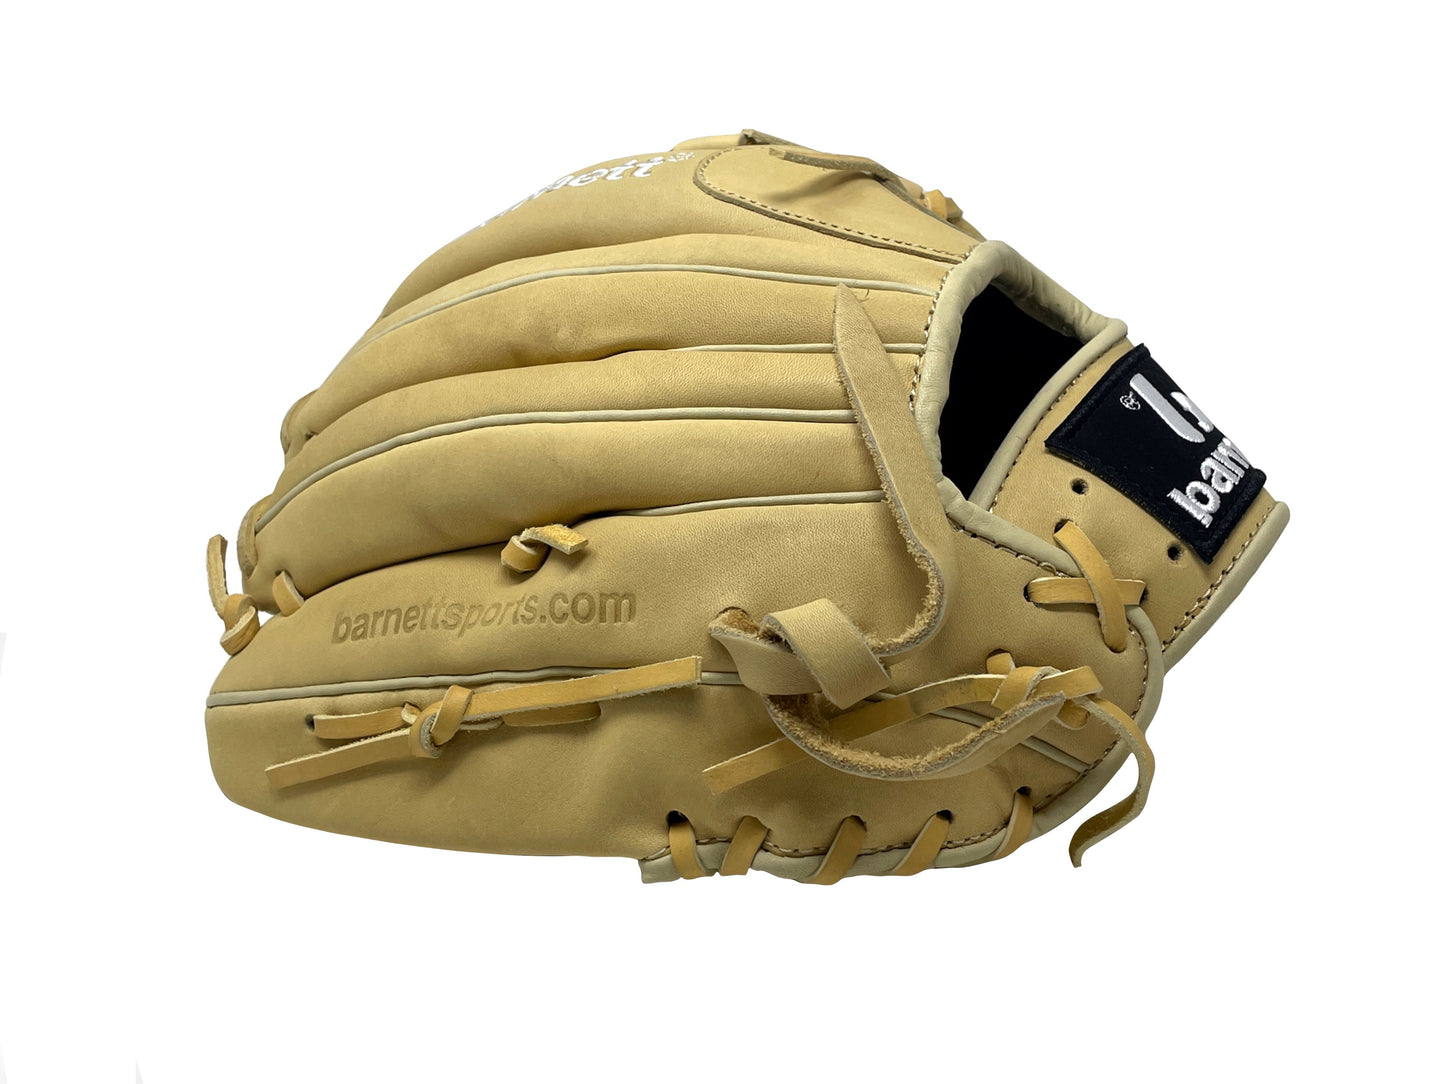 FL-120 gant de baseball cuir haute qualité infield/outfield/pitcher 12, beige